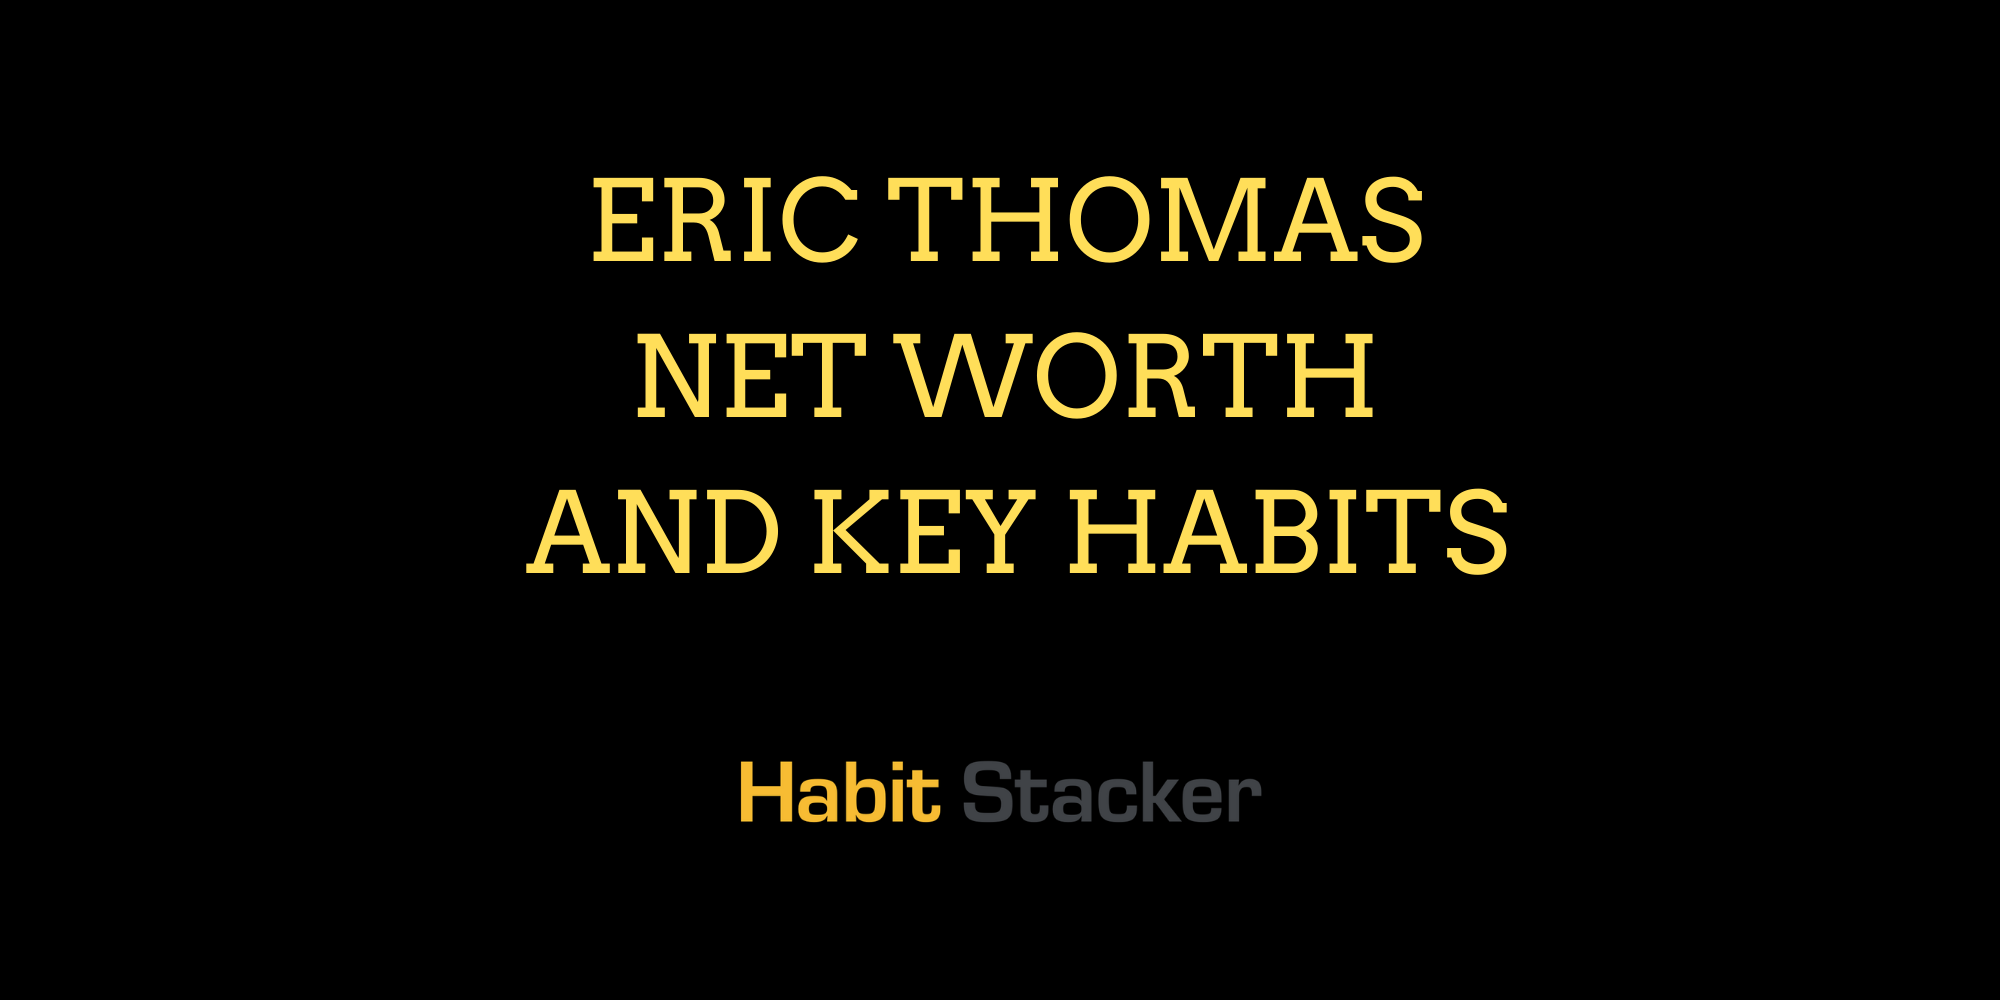 Eric Thomas Net Worth and Key Habits